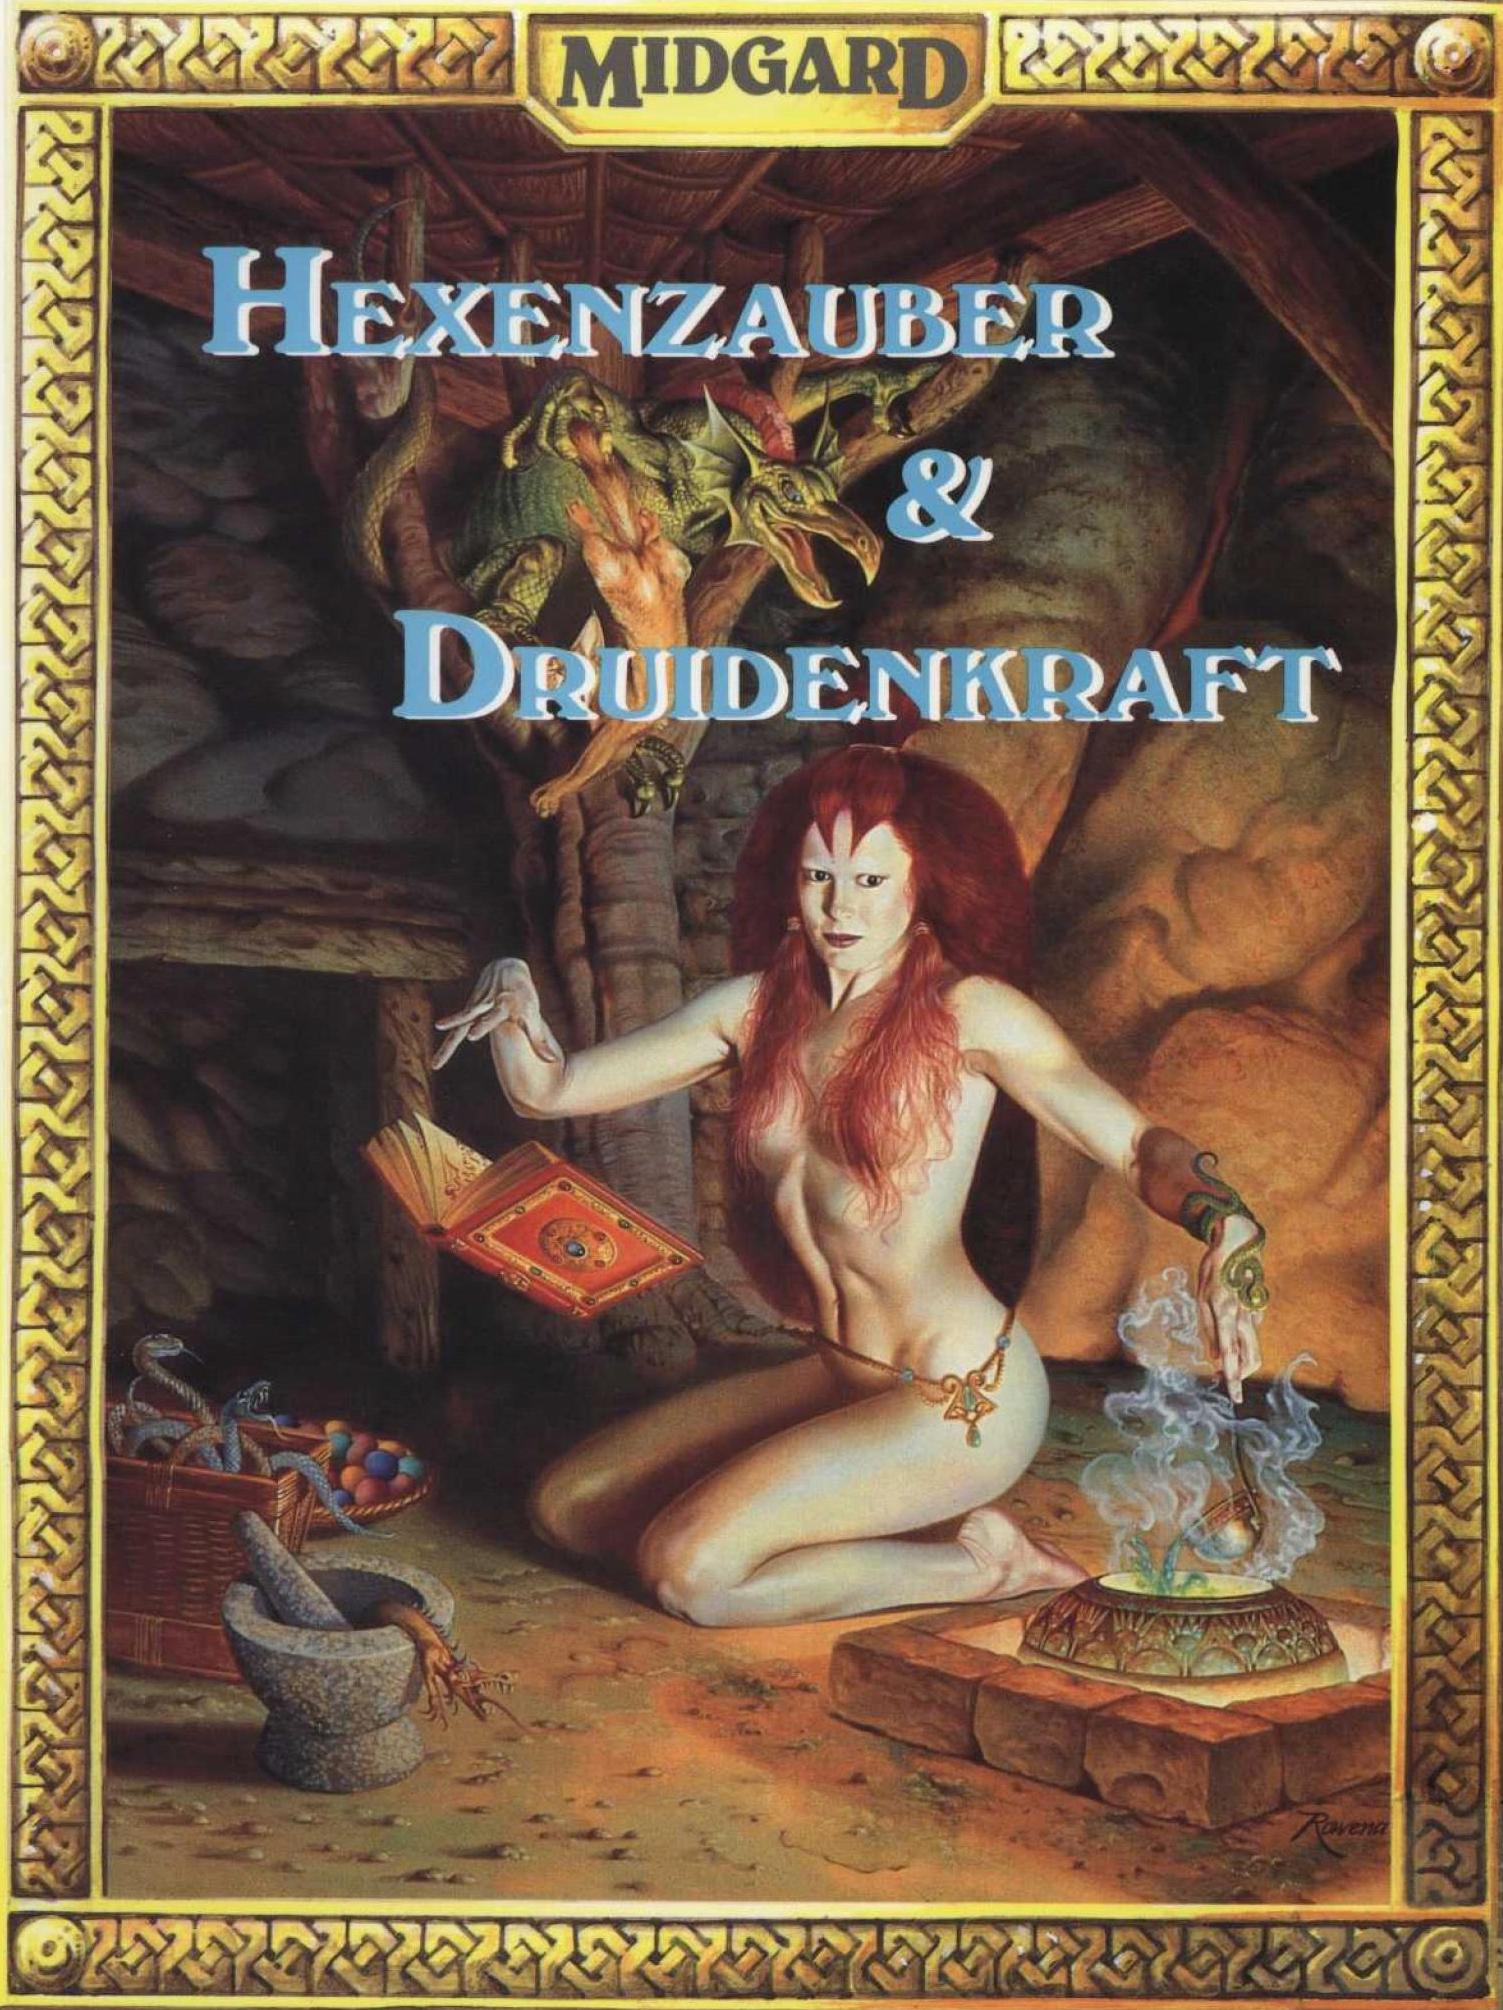 Der Gildenbrief Sonderdruck beschäftigte sich unter Leitung von Alexander Huiskes mit der Rolle des Druiden